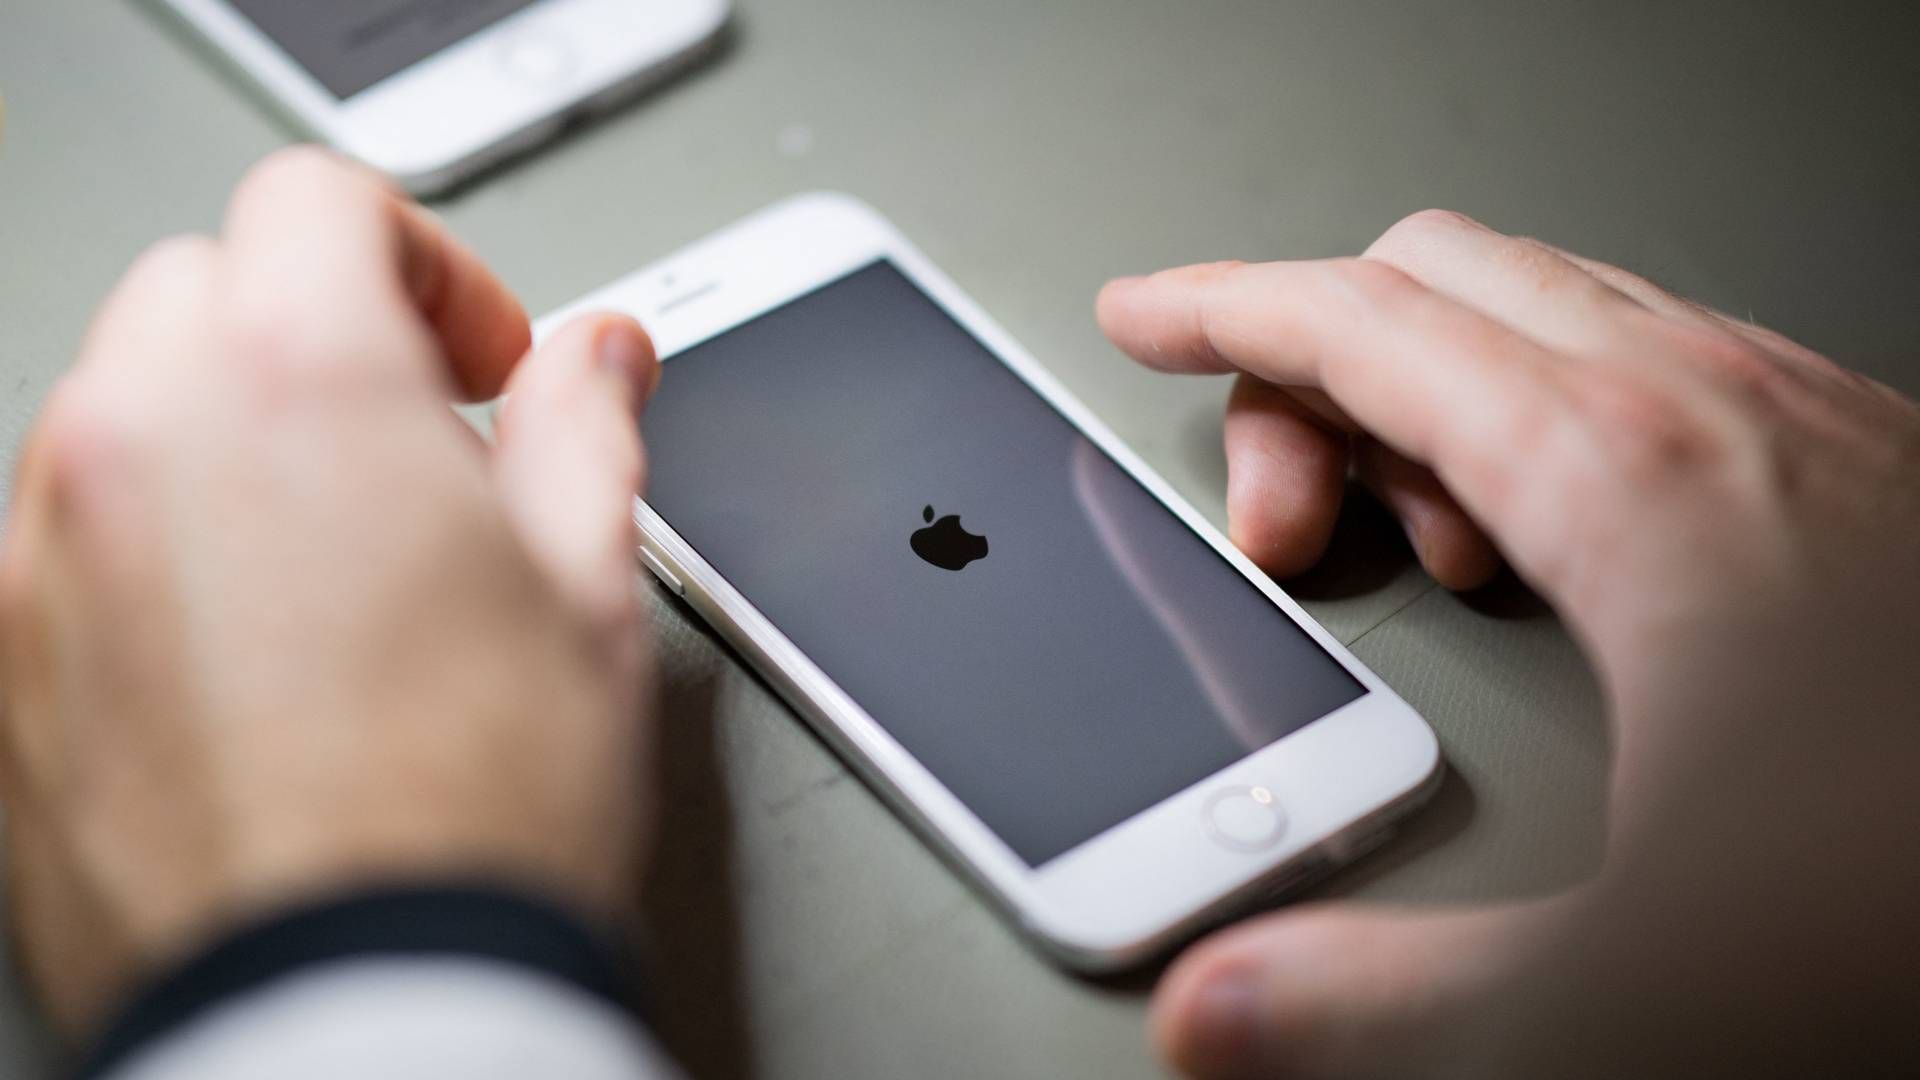 Kritik af Apples praksis med at scanne mobiltelefoner bunder i en misforståelse, mener softwarechef. | Foto: LOIC VENANCE/AFP / AFP